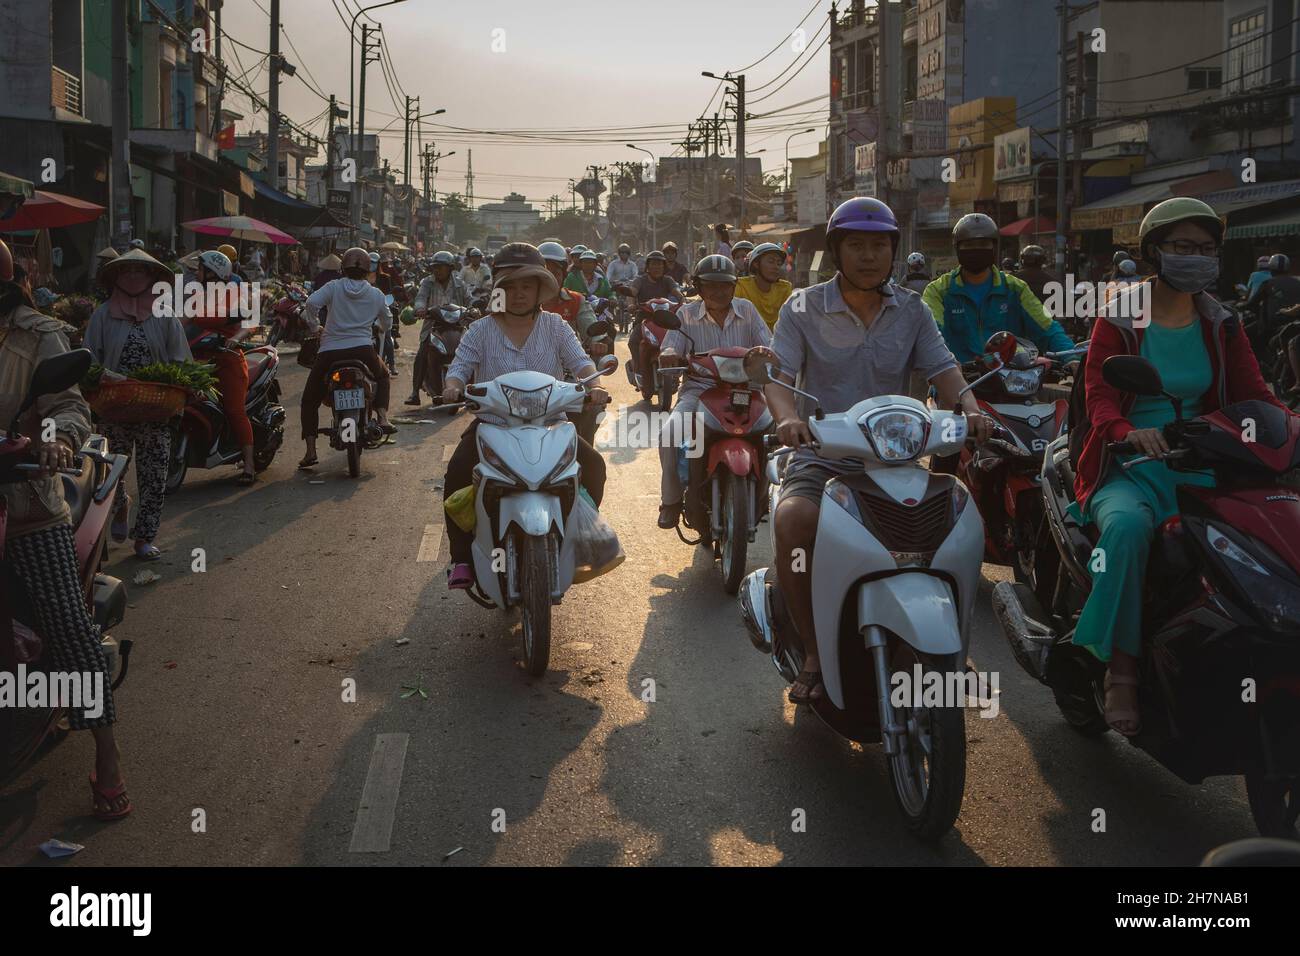 CAN Tho, Vietnam-5 de abril de 2018: La motocicleta es uno de los vehículos de transporte más comunes en Vietnam. Foto de stock